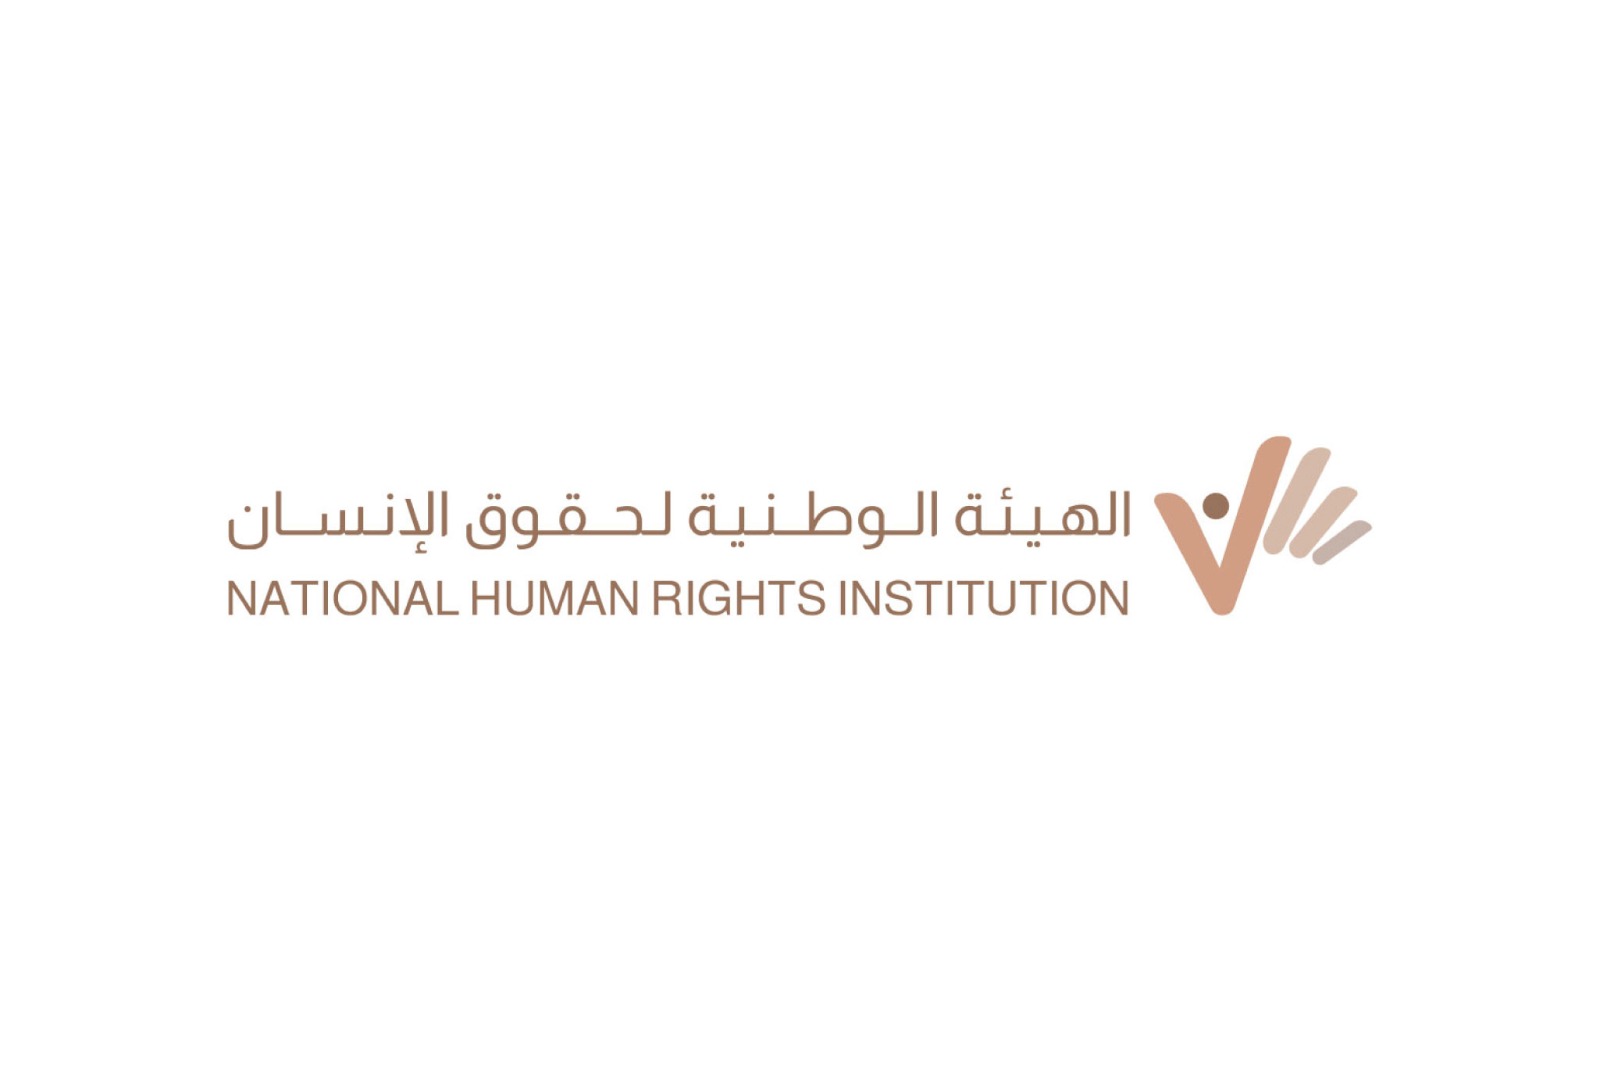 الهيئة تشارك في ندوة حول احترام حقوق المصابين بالتوحد